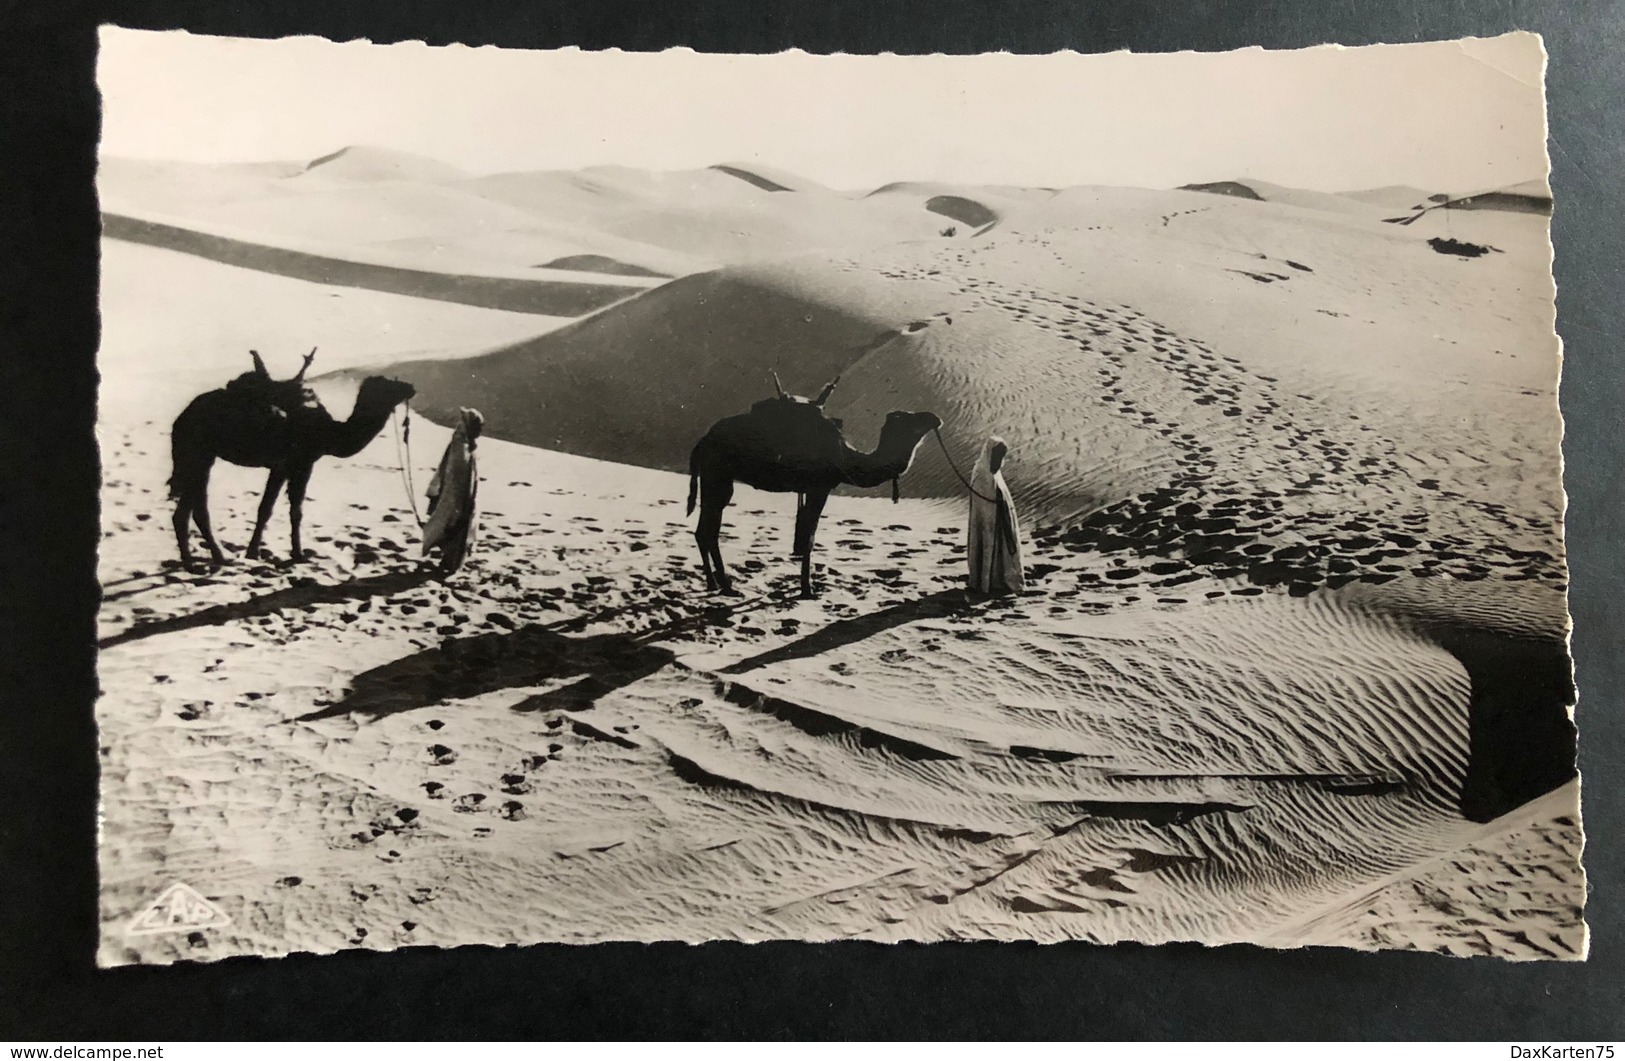 Scenes Et Types Passage De Dunes Au Desert - Ozeanien